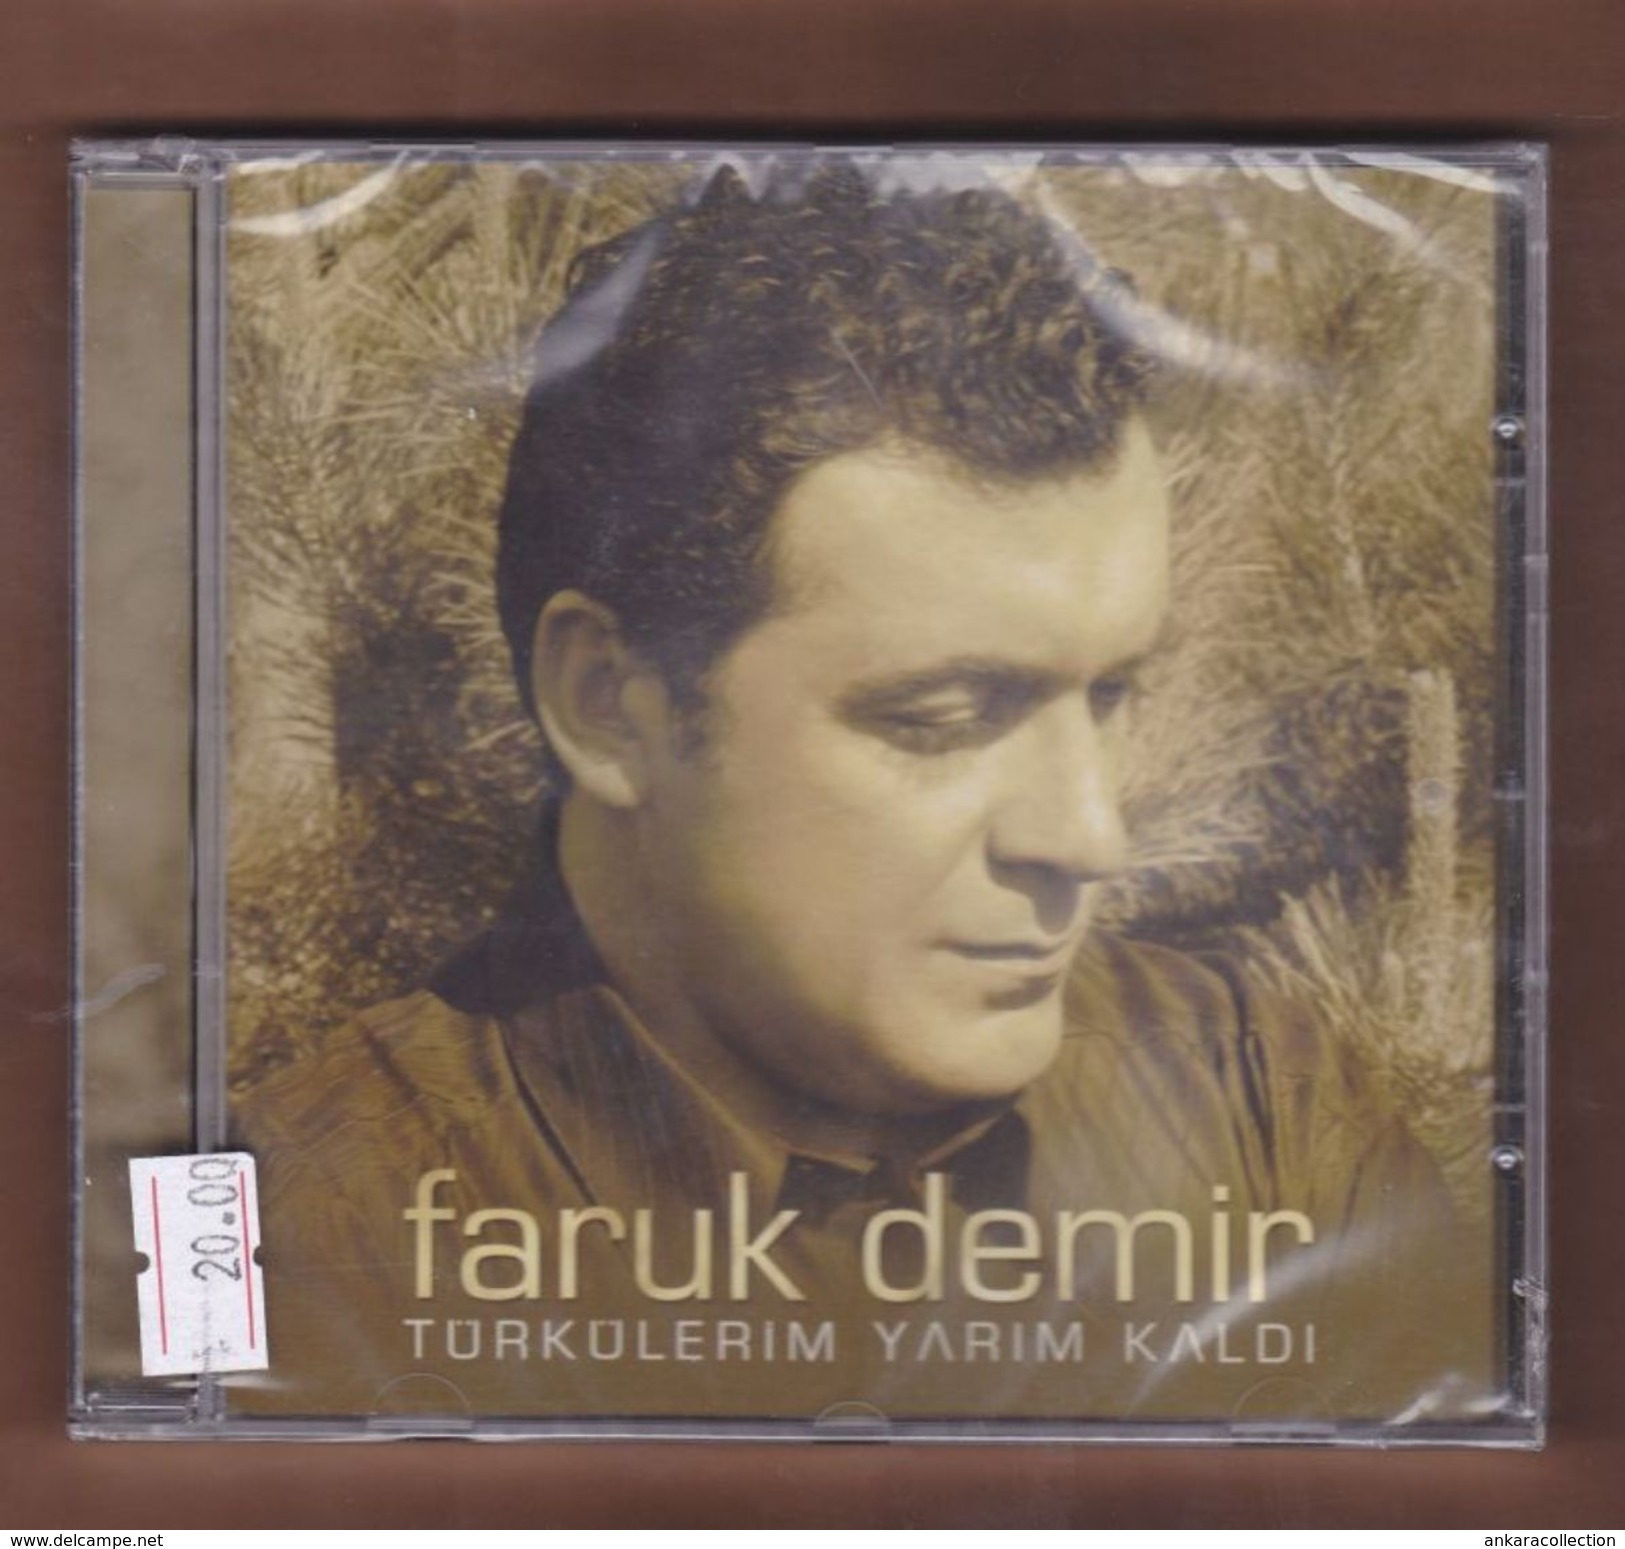 AC -  Faruk Demir Türkülerim Yarım Kaldı BRAND NEW TURKISH MUSIC CD - World Music